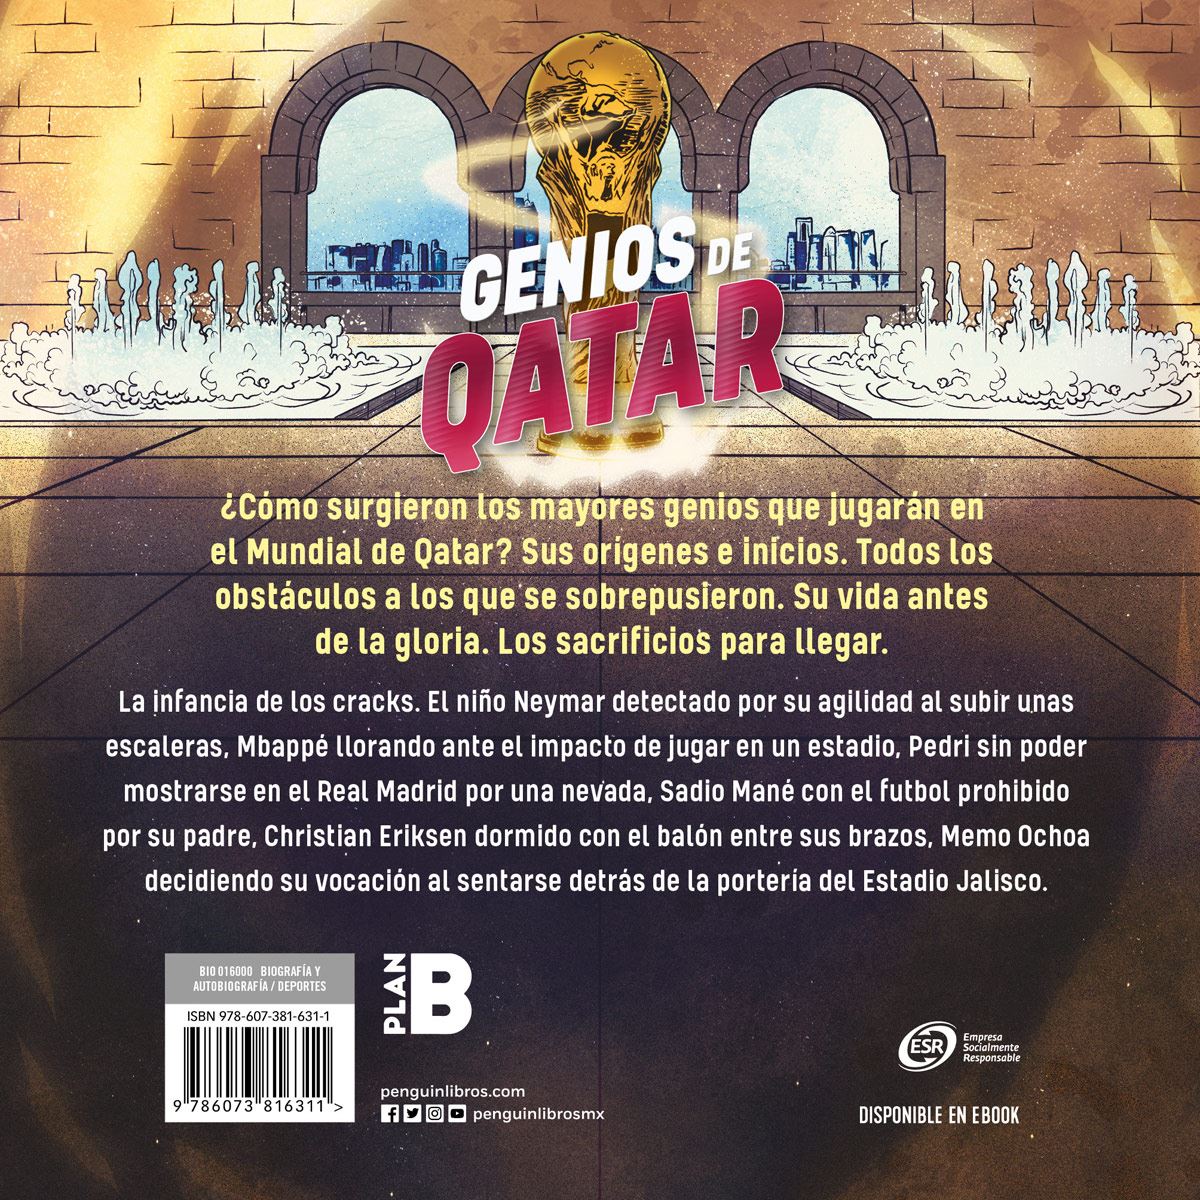 Genios de Qatar